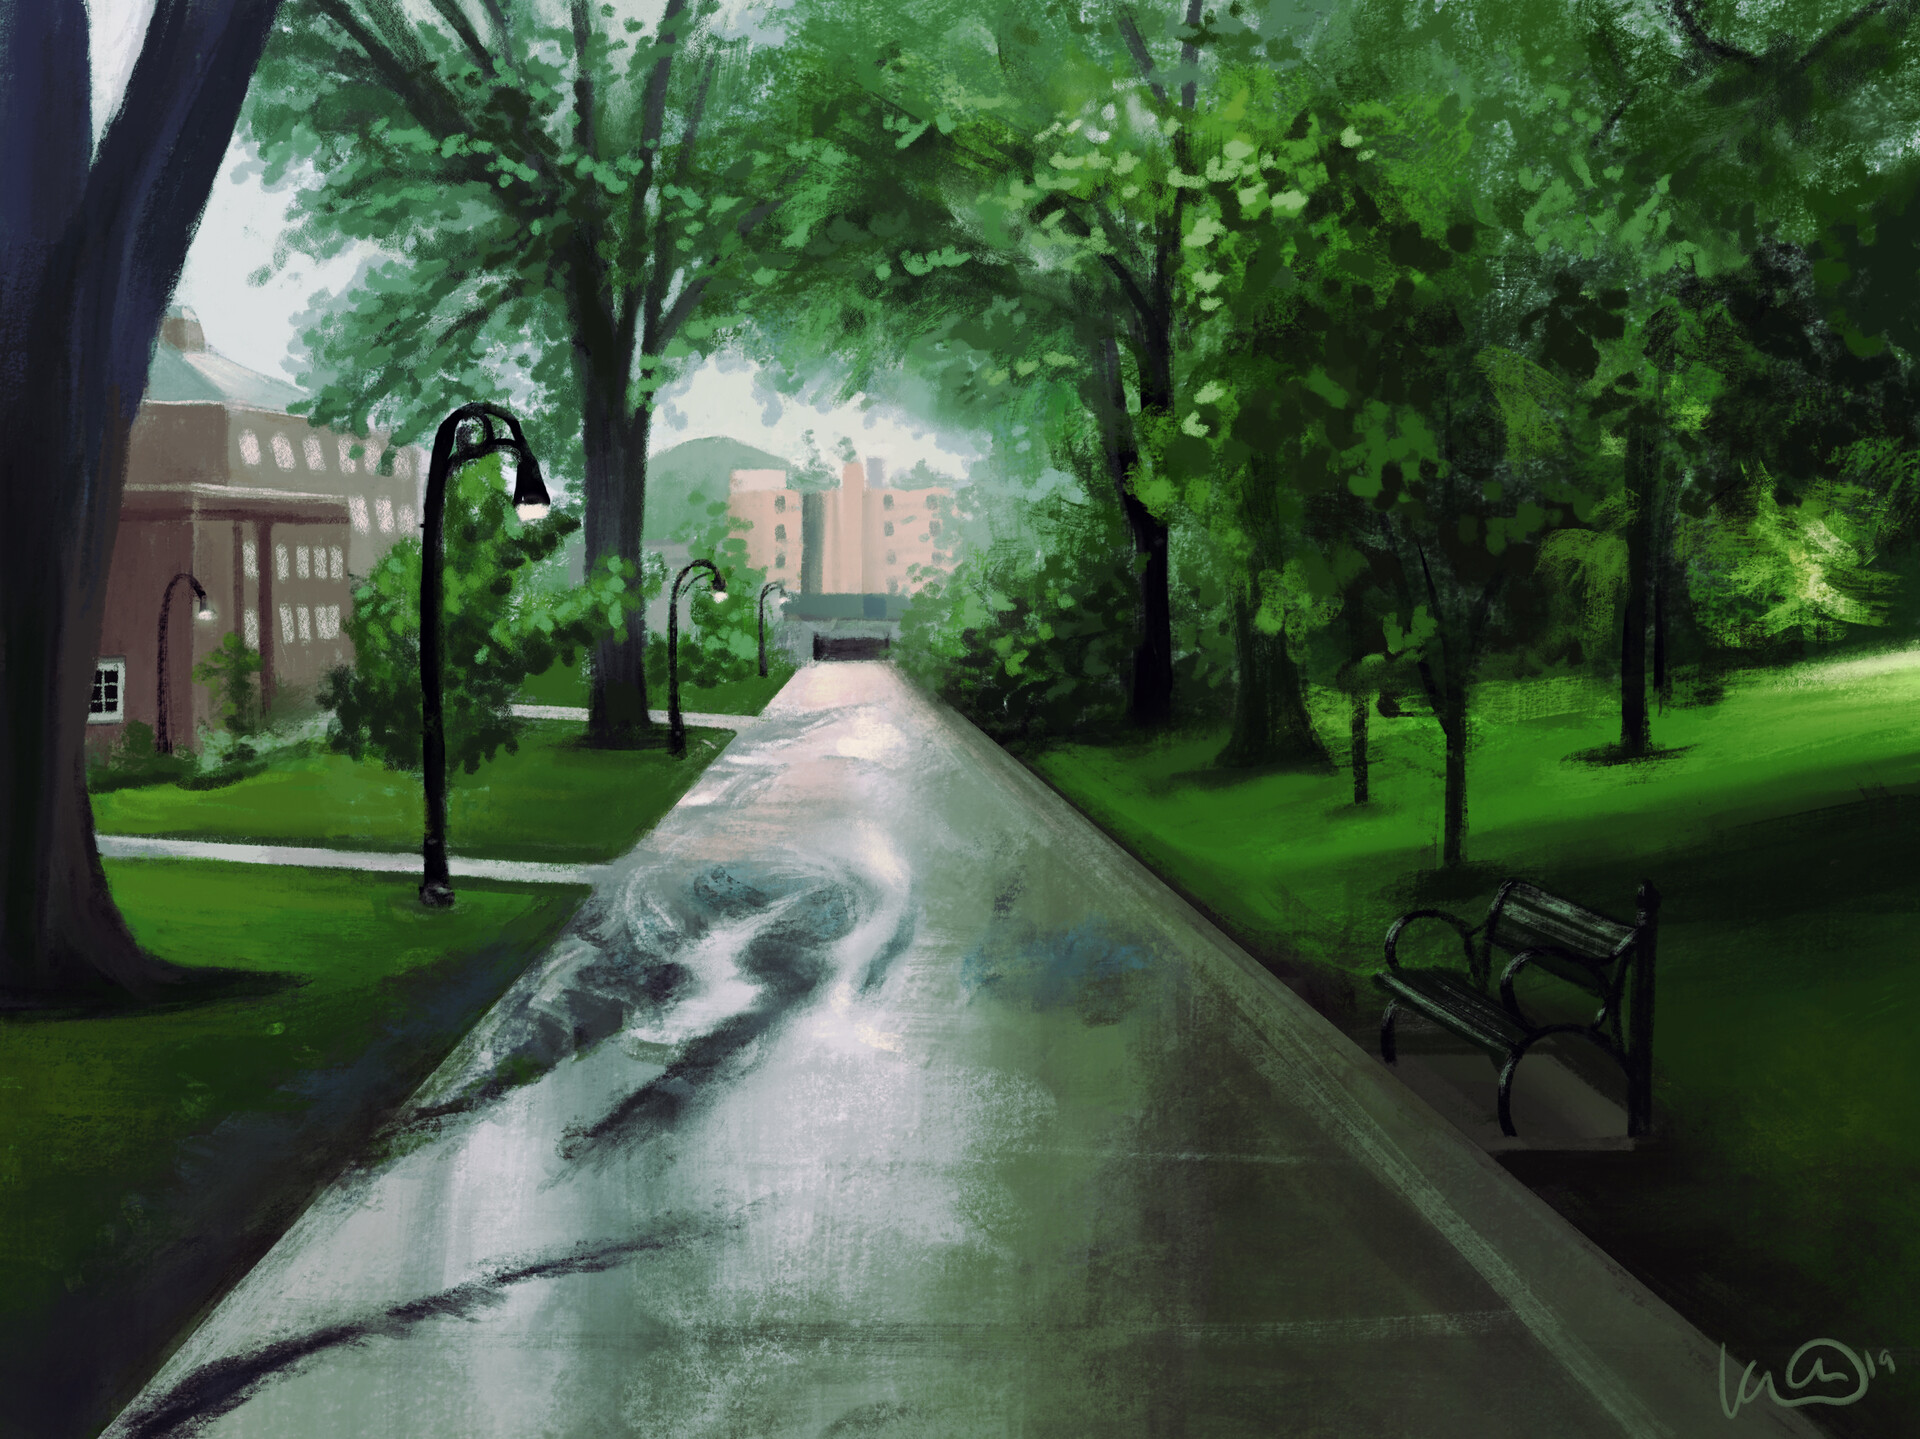 Campus Rain